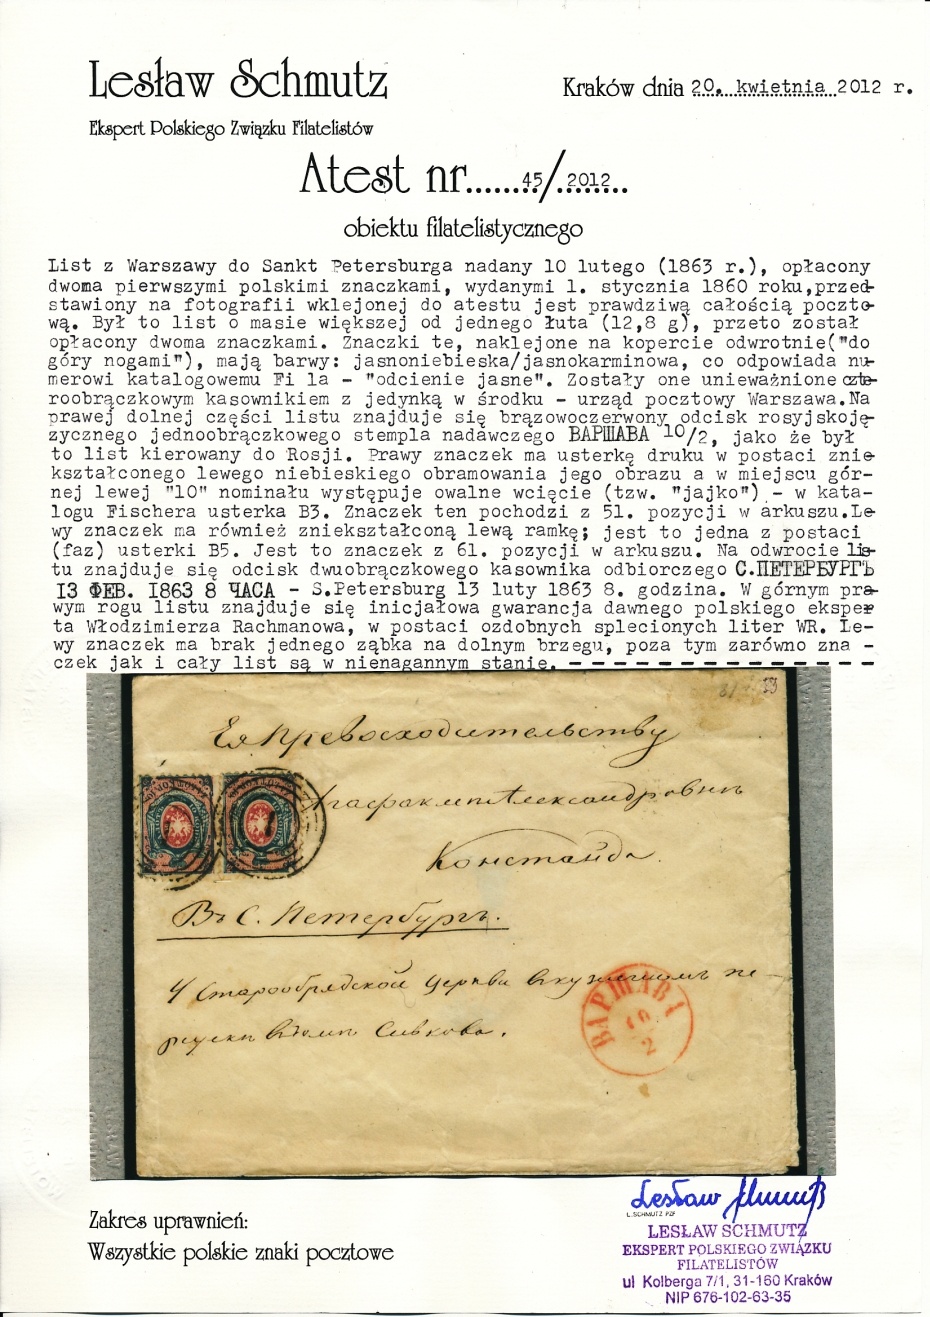 1 - Warszawa (191) 1a atest obwoluty dwułutowego listu do Rosji błąd B3 poz.51 tzw. jajko i błąd B2 poz.61 uszkodzona lewa ramka, pkt.1B